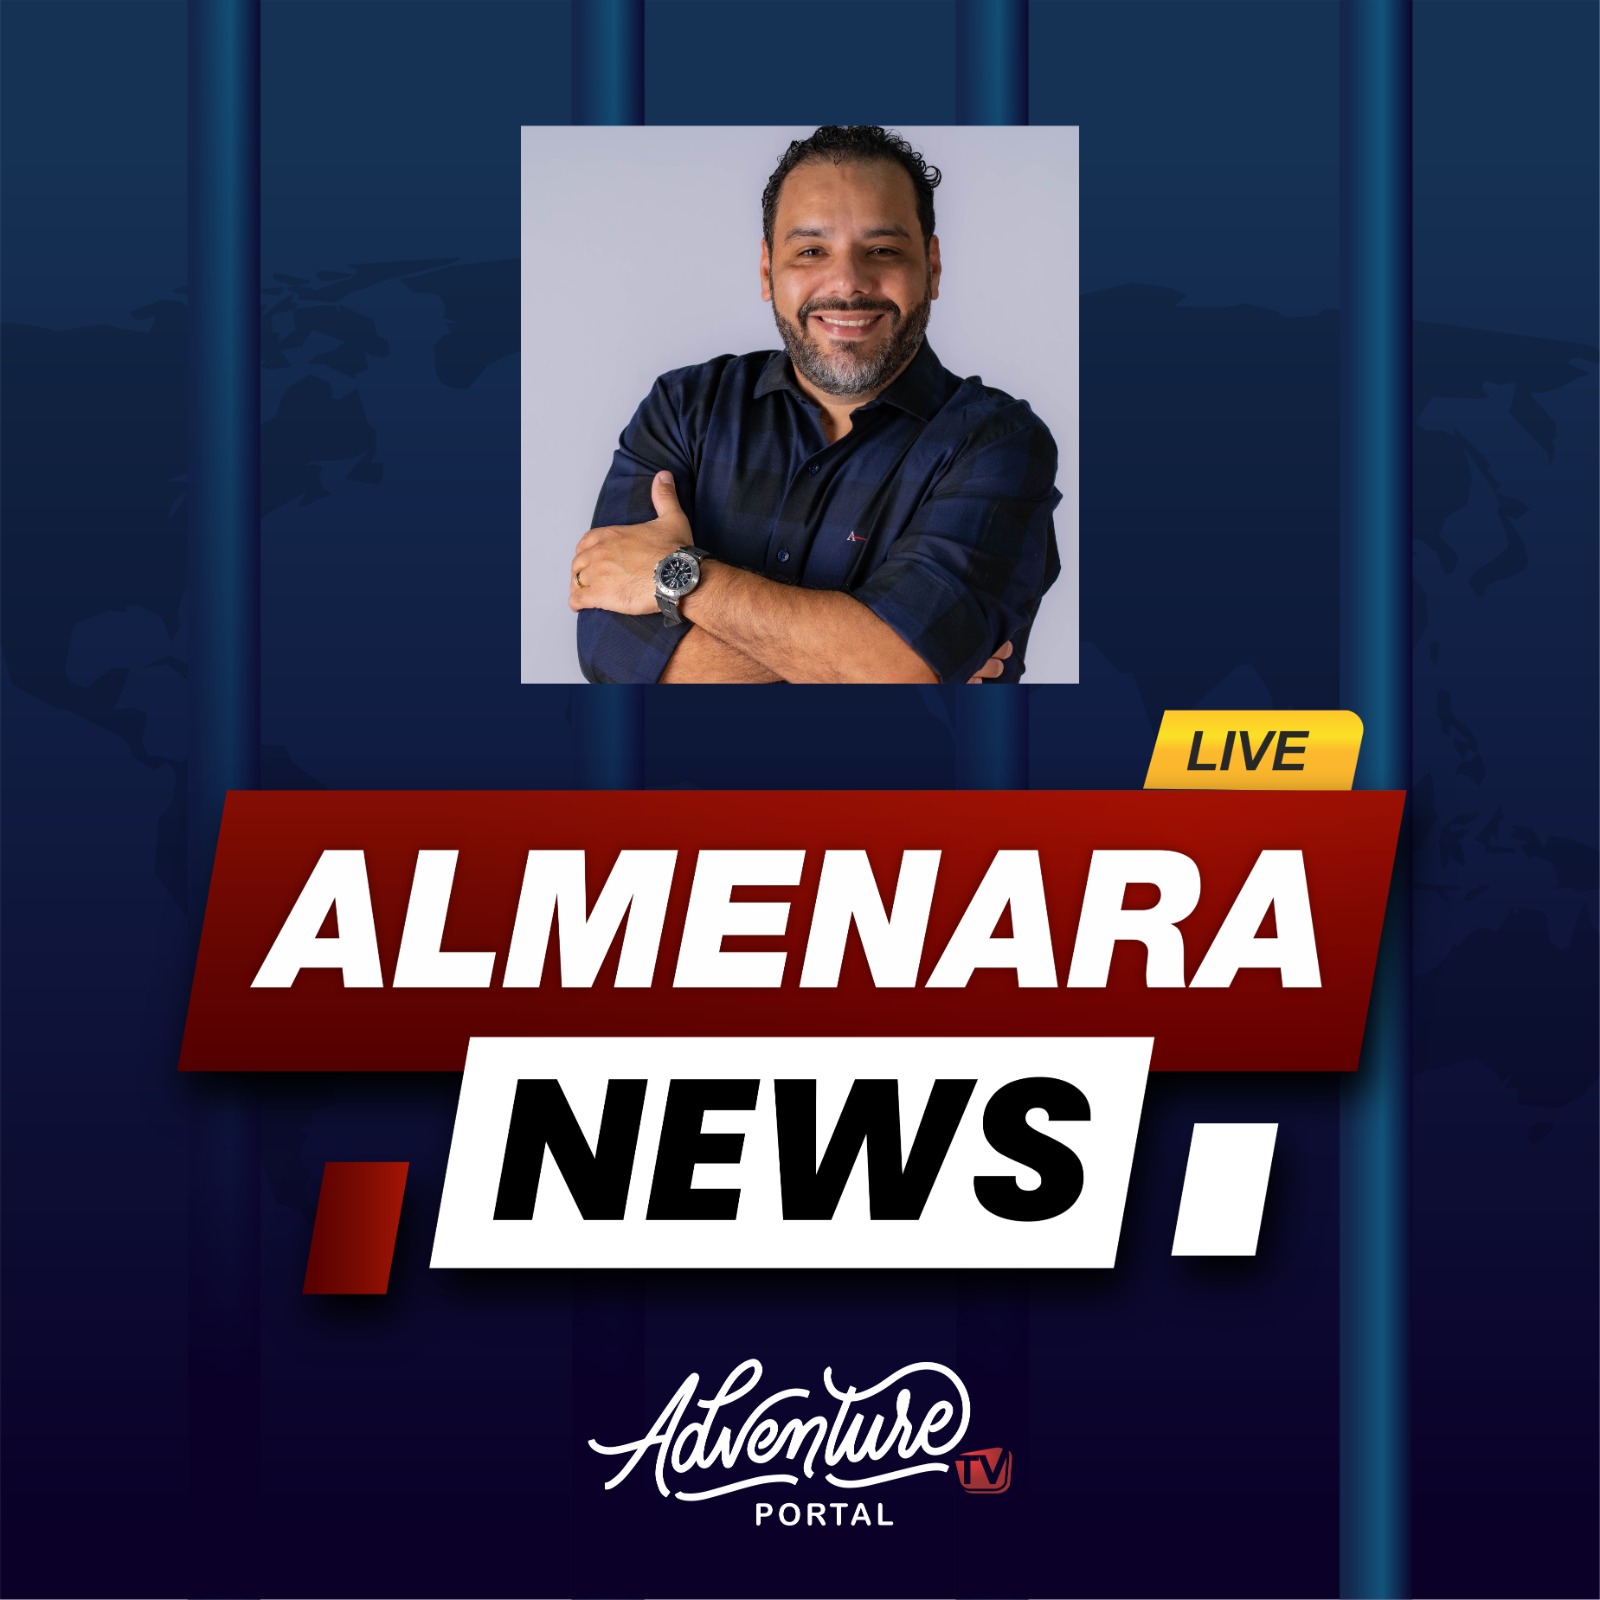 Almenara News